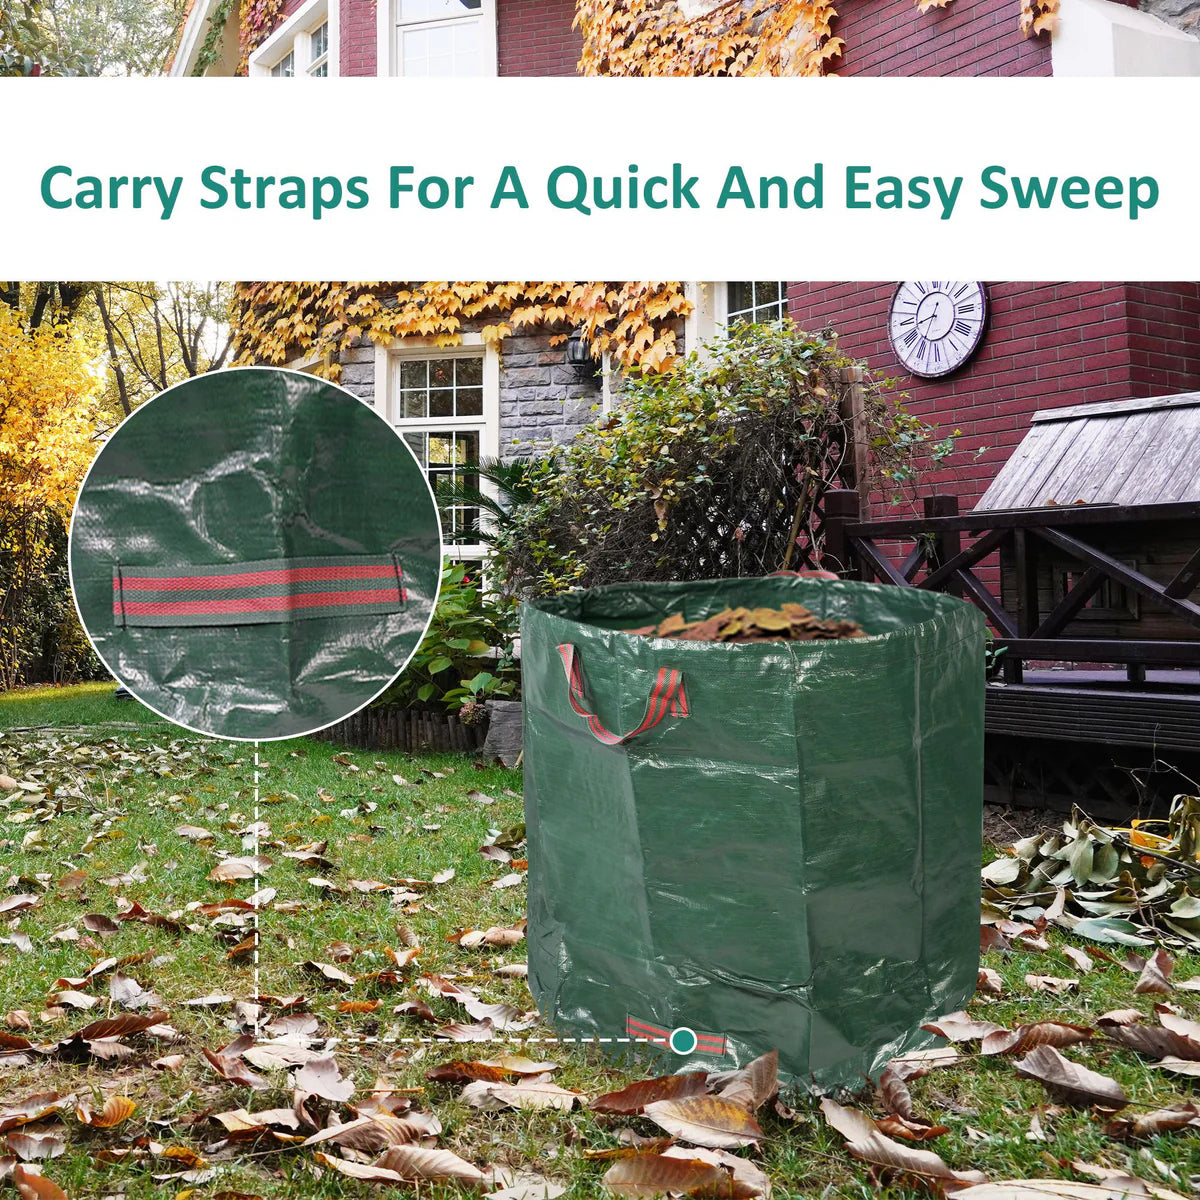 Metal Leaf Rake Set, Comes with Large Leaf Scoop, 2 Garden Bags, 1 Pair of Work Gloves, Leaf Clean-Up Tool